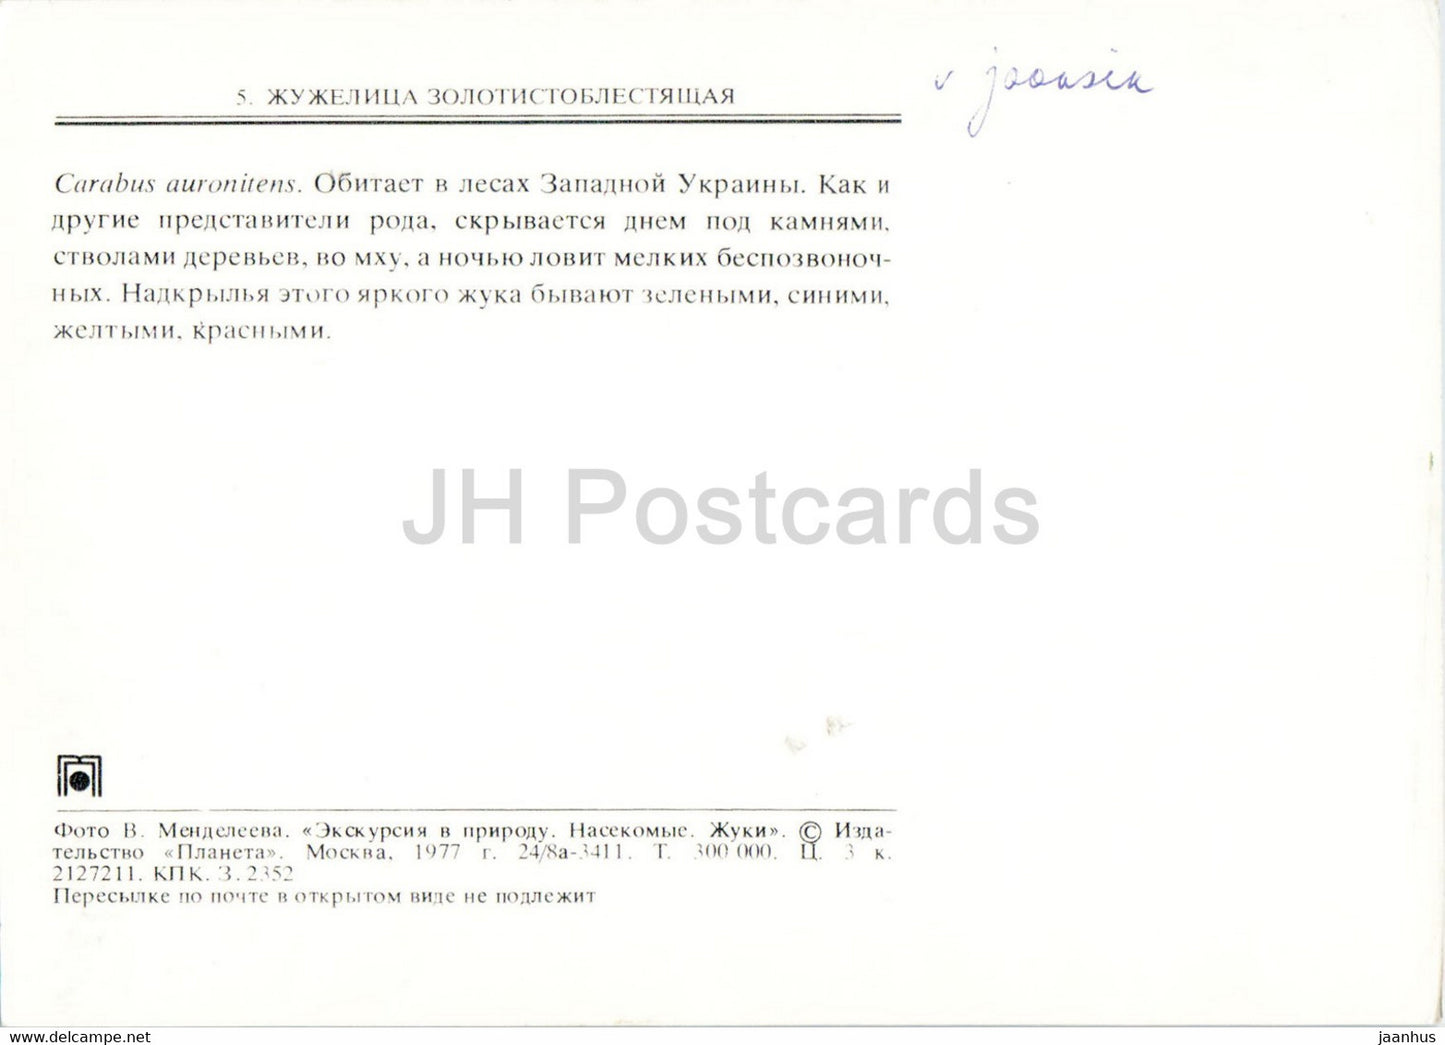 Carabus auronitens – Insekten – 1977 – Russland UdSSR – unbenutzt